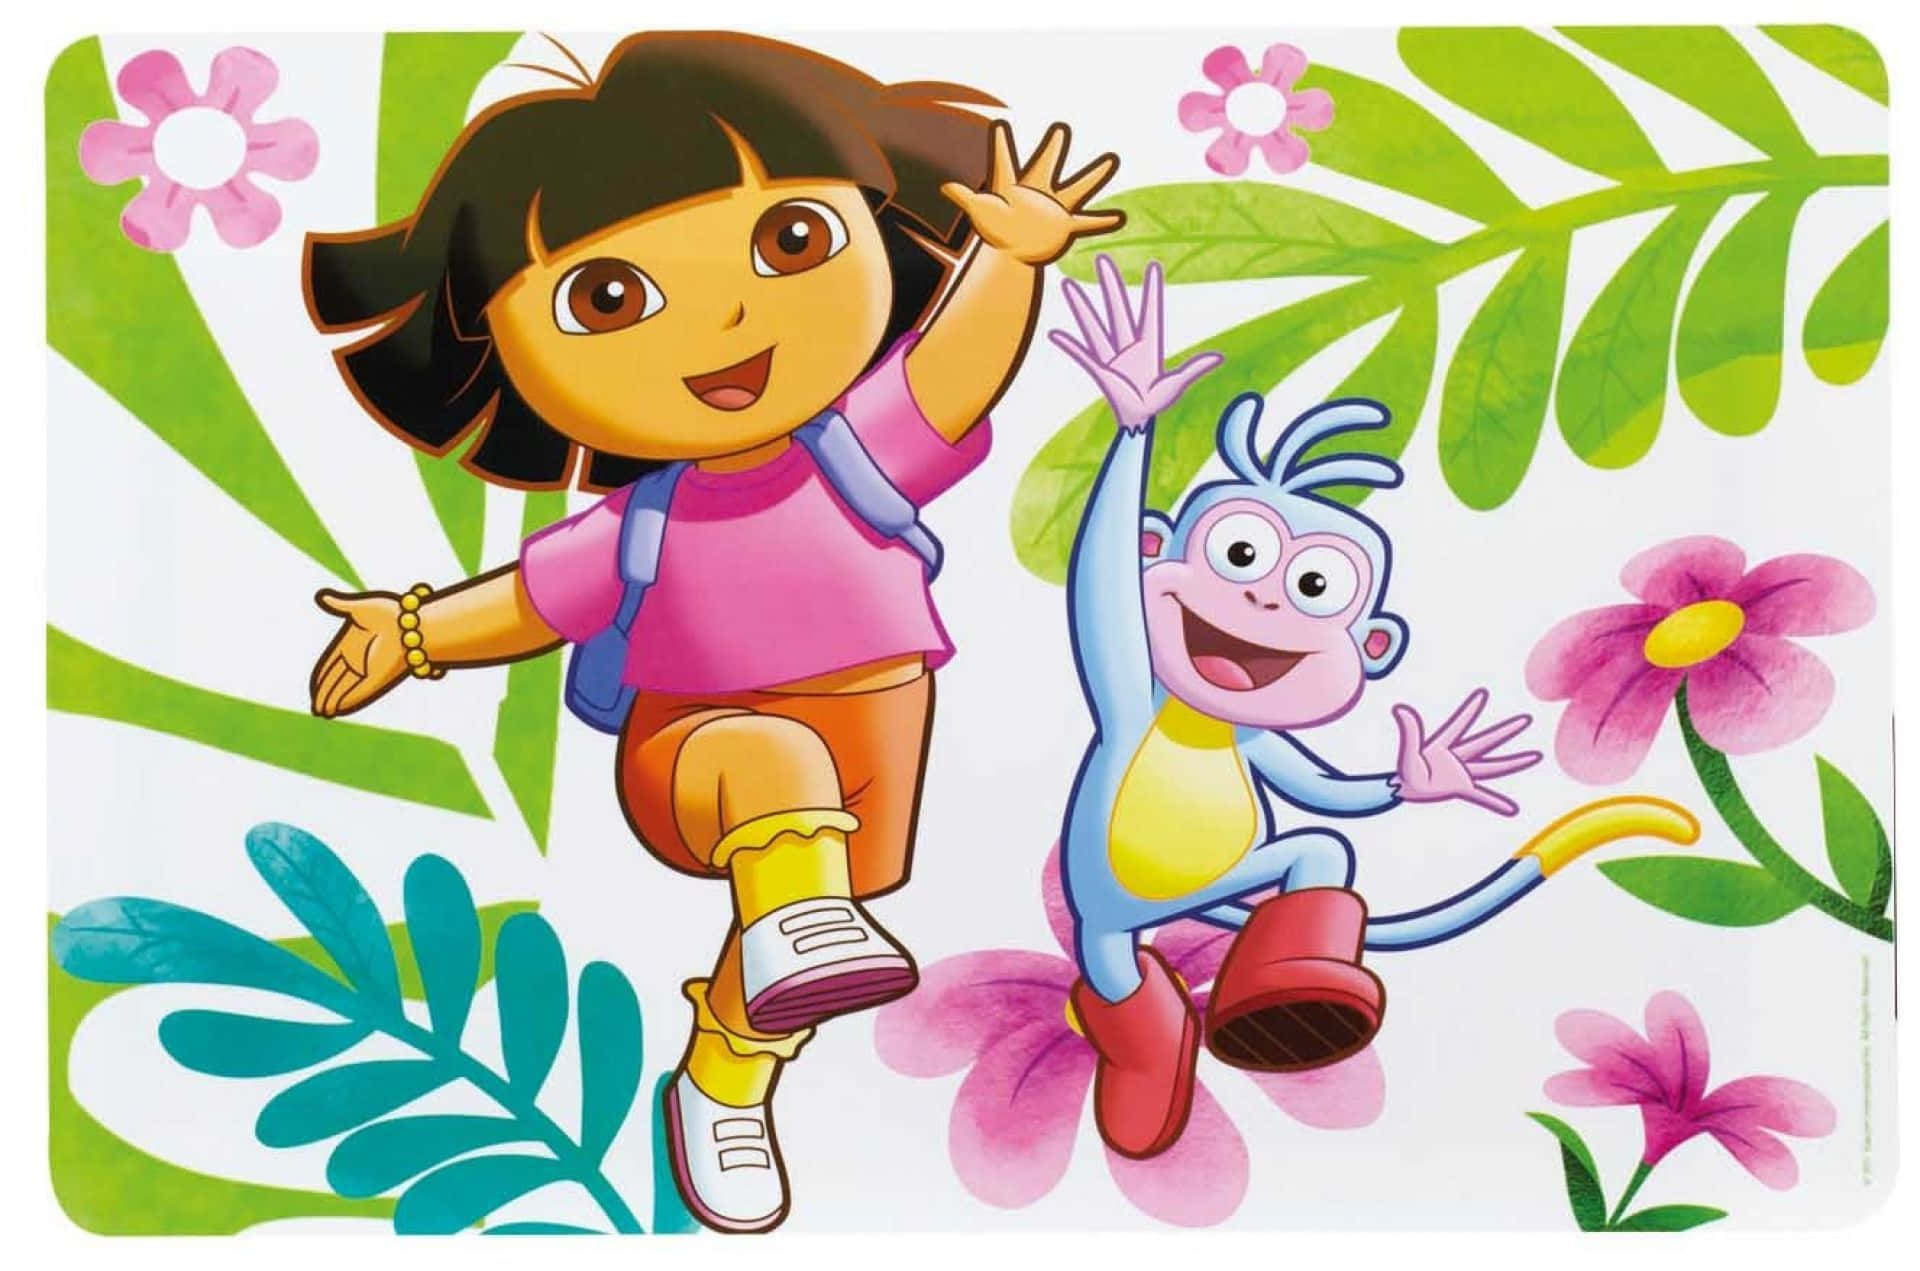 Dora The Explorer in her Adventure